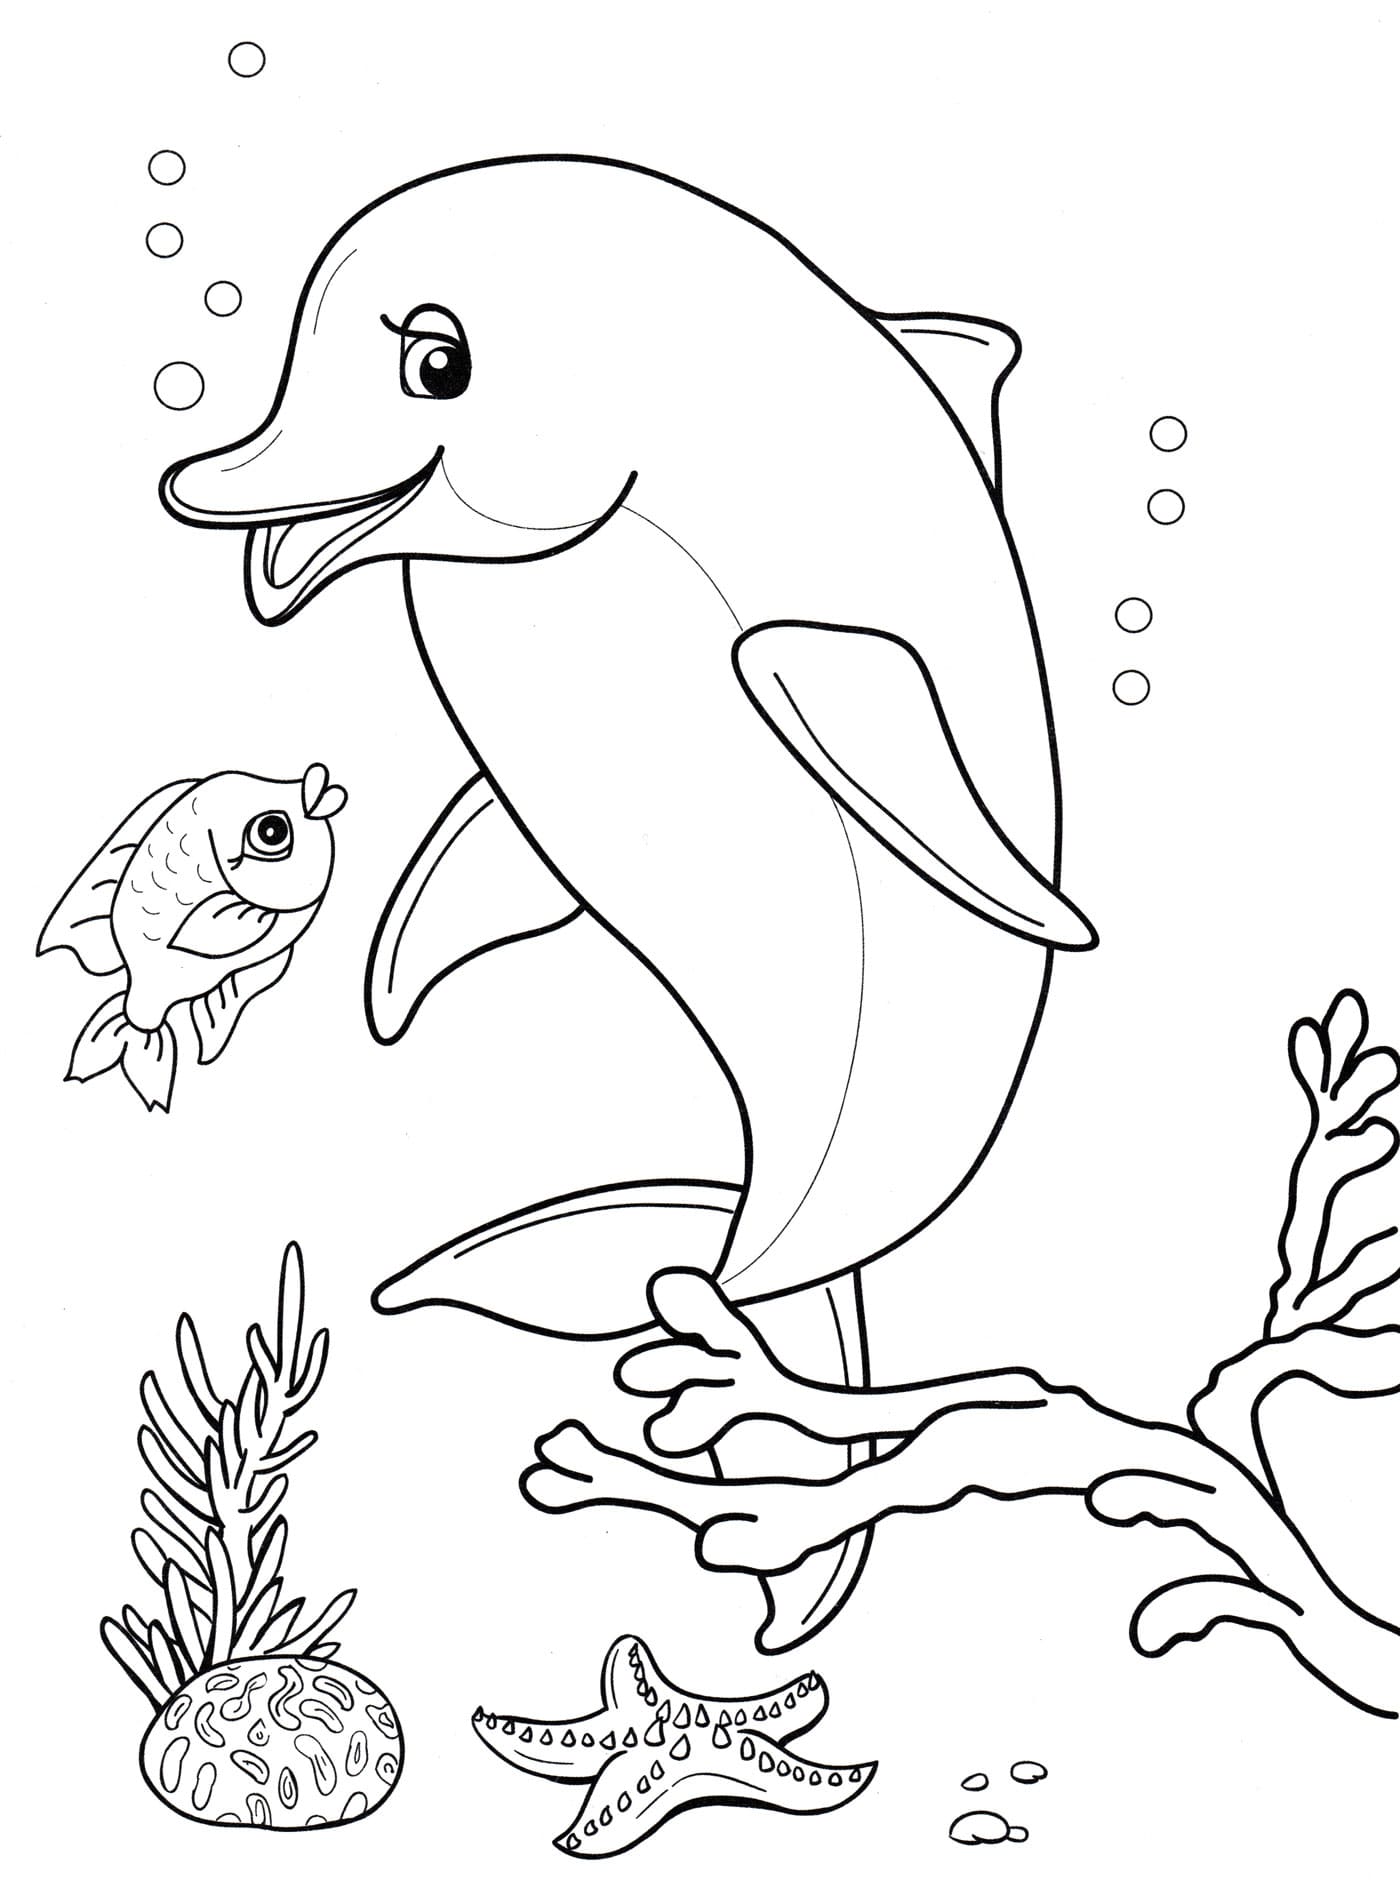 Dibujos para colorear de Delfines. 100 imágenes gratis para imprimir